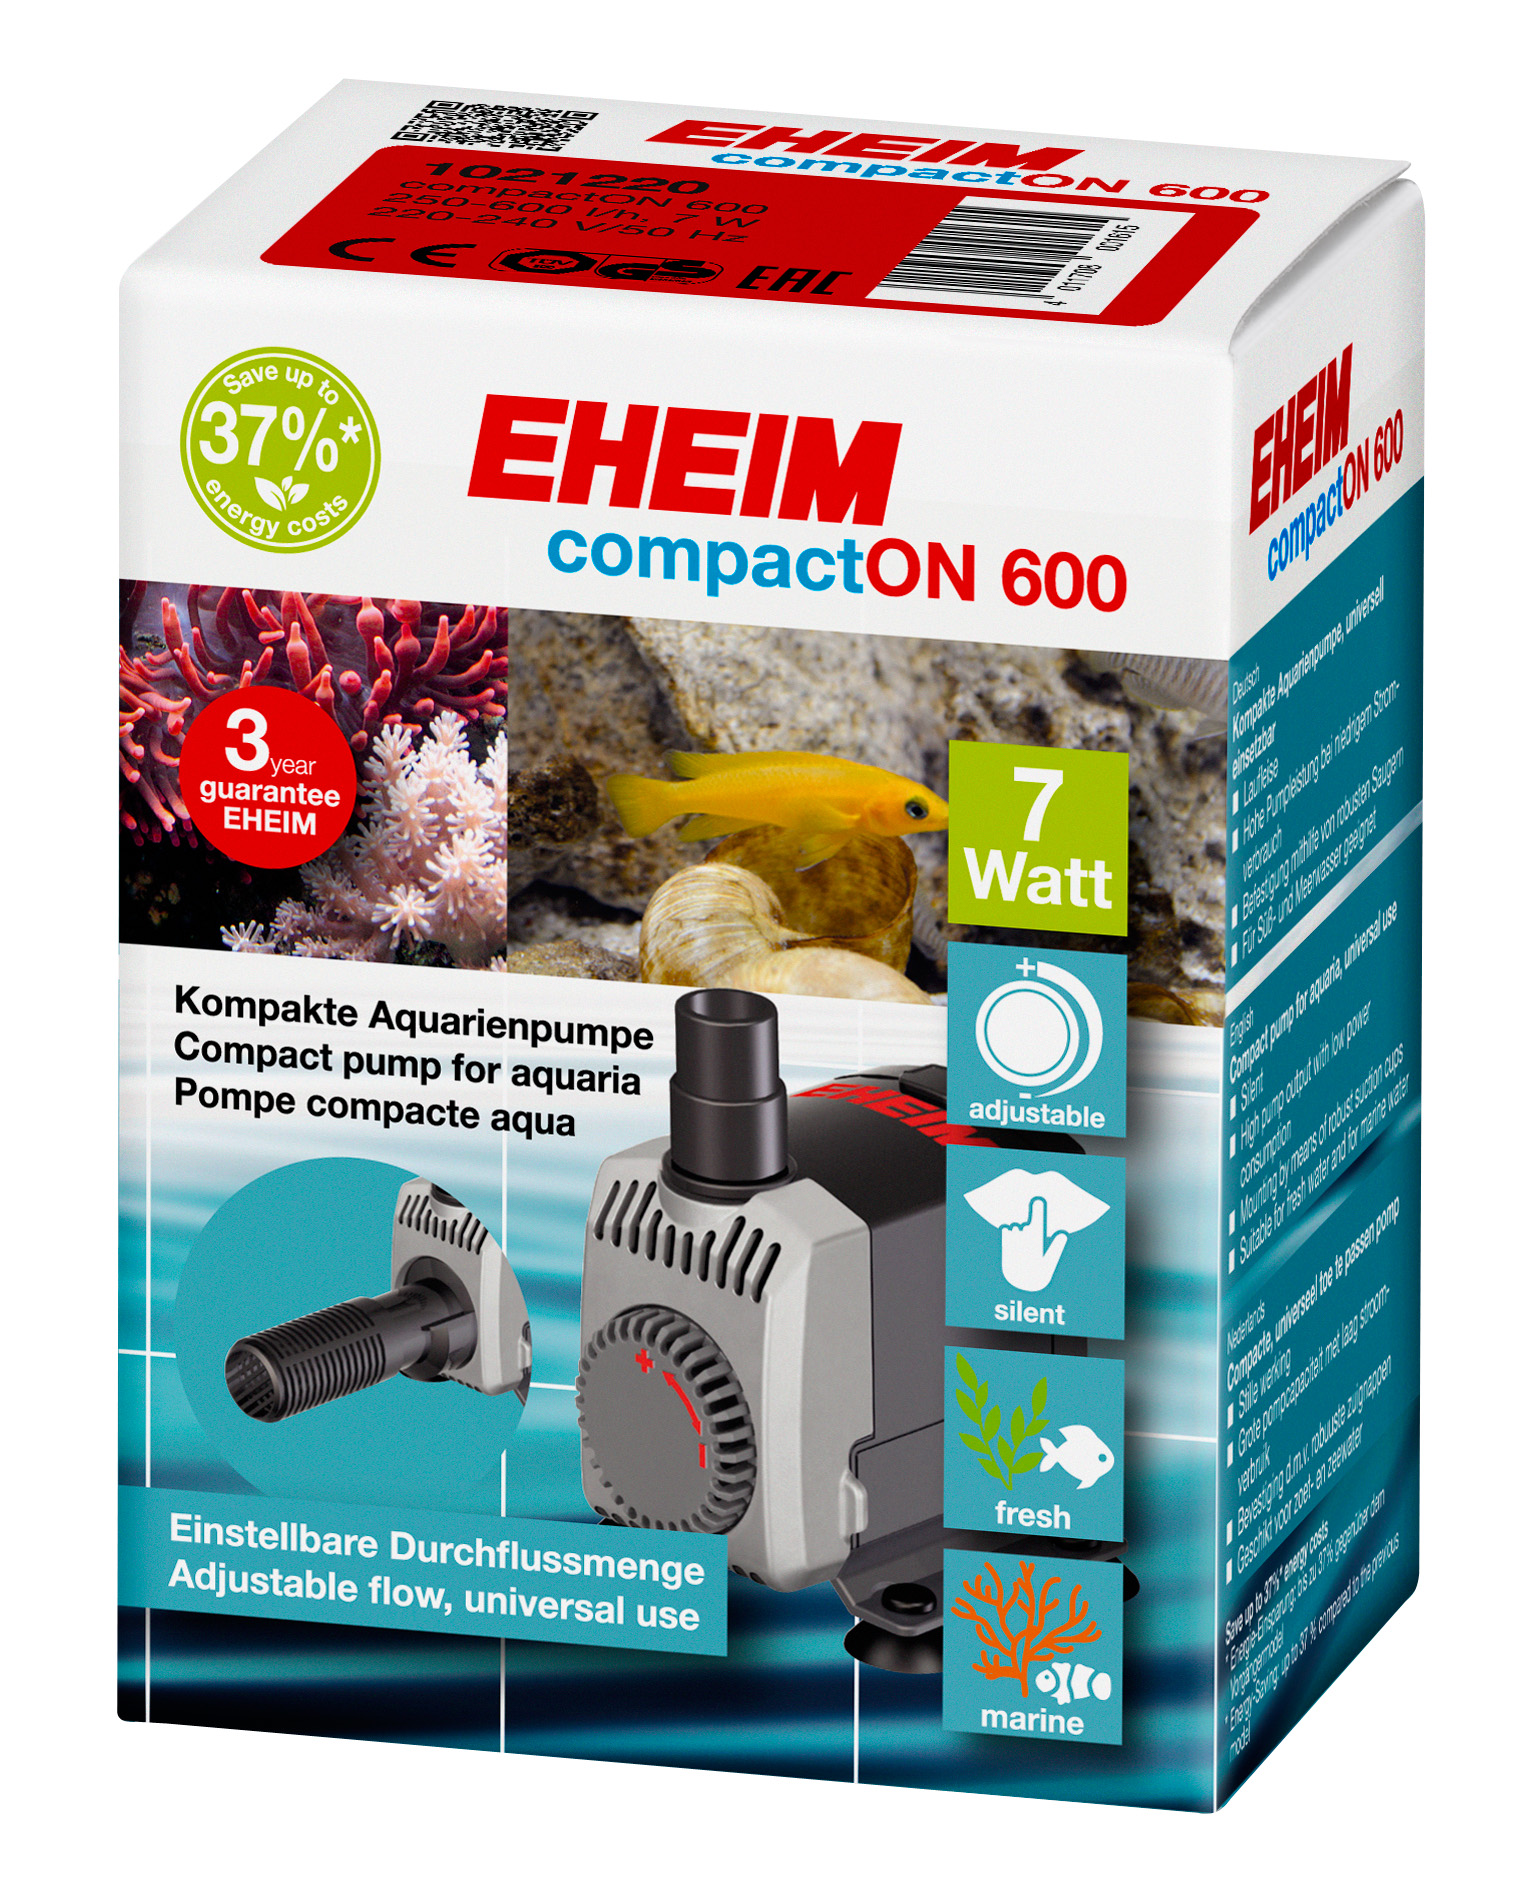 Помпа для аквариума подъемная Eheim CompactON 600, погружная, 600 л/ч, 7 Вт